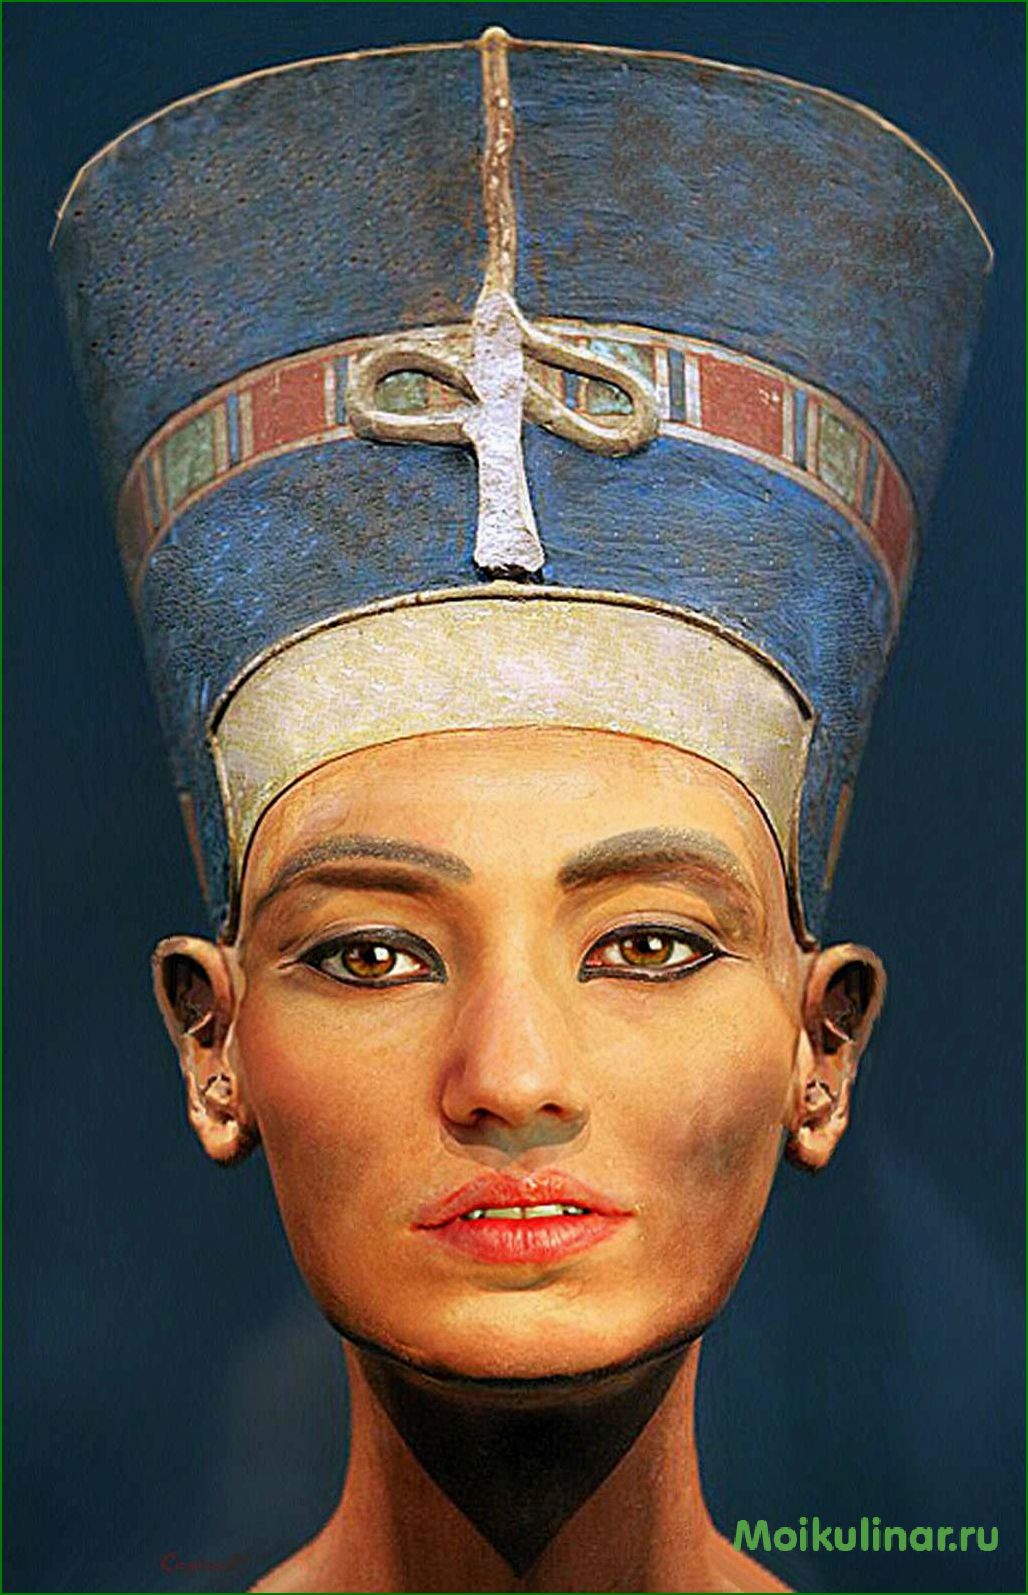 Потрясающие нефертити картинки, которые захватывают дух и погружают в мир древнего Египта